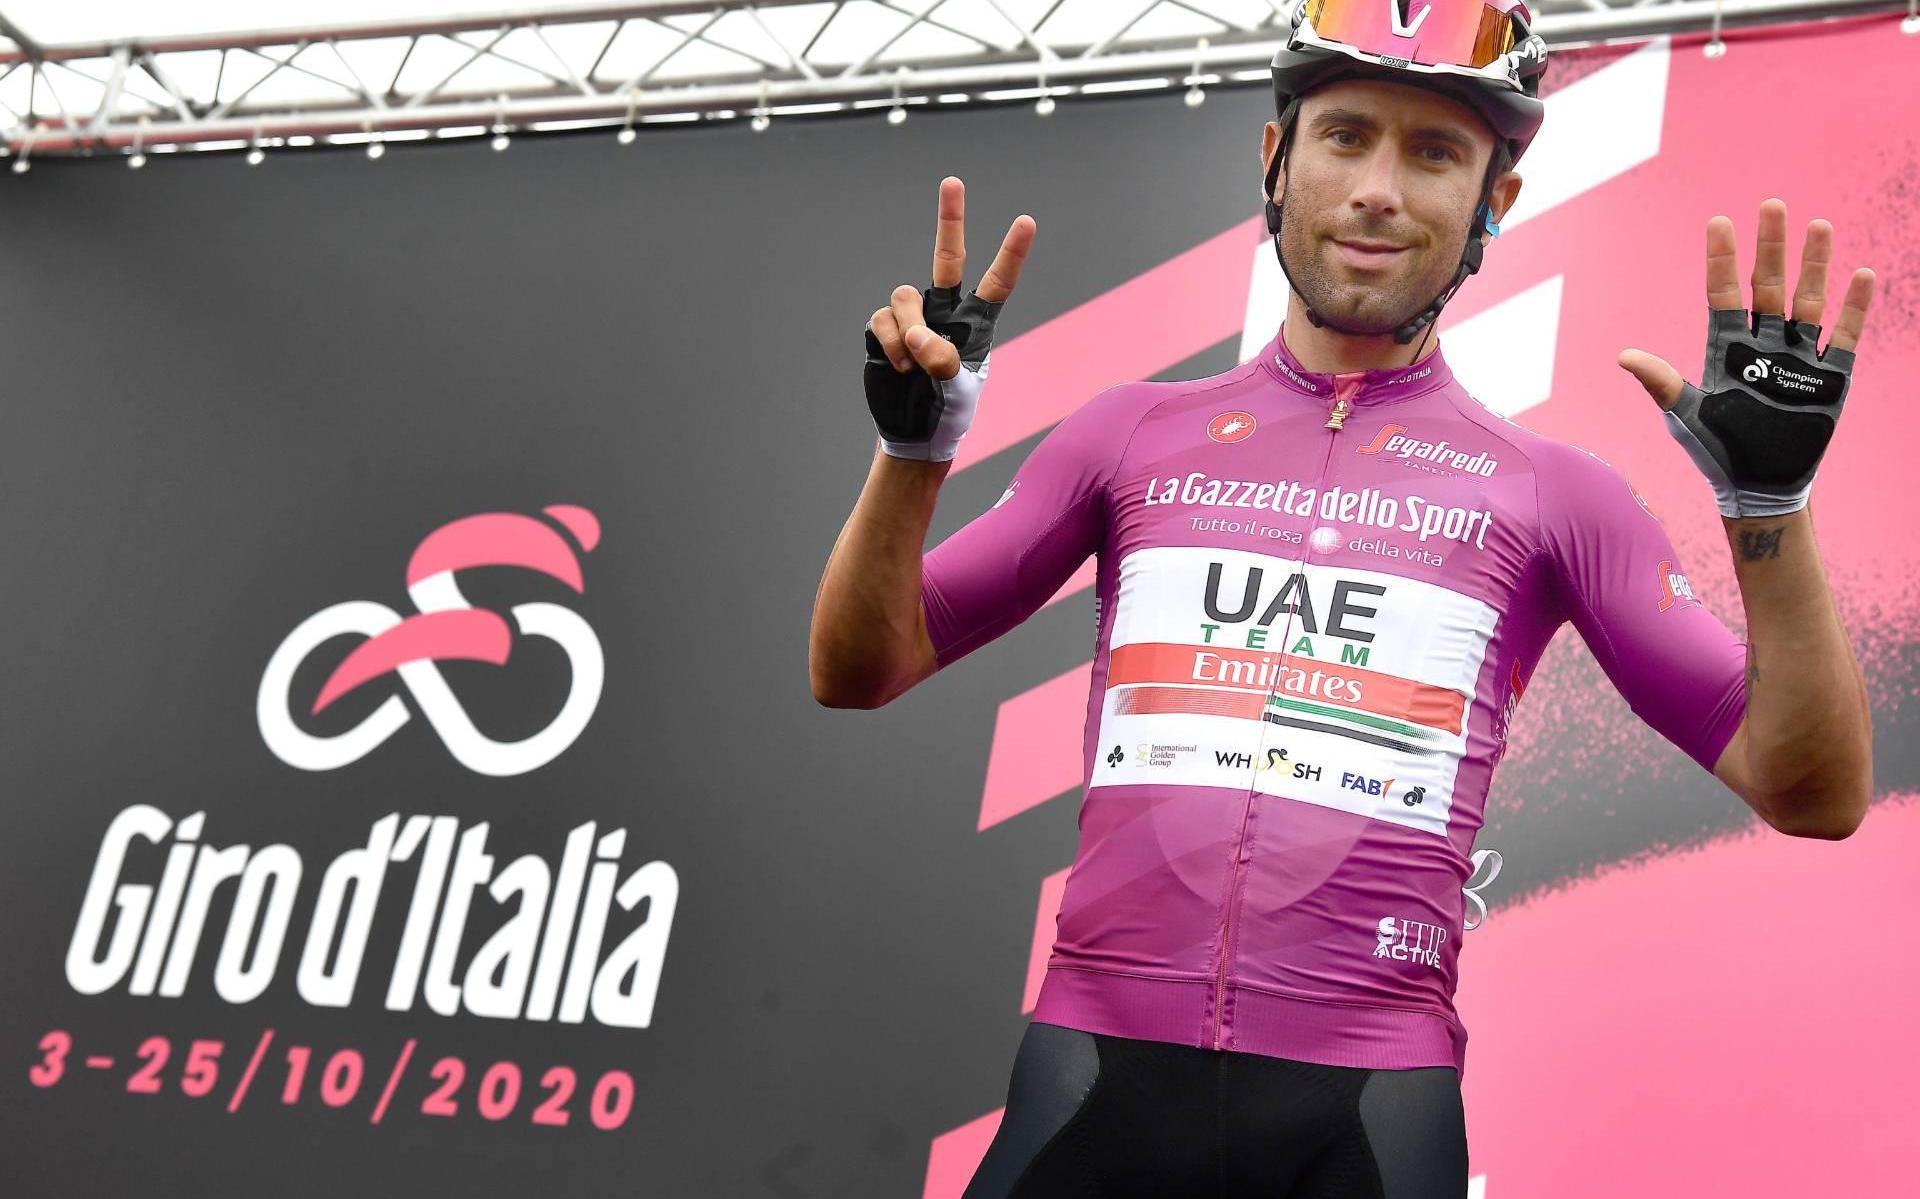 Wielrenner Ulissi wint sprint in 13e etappe Giro